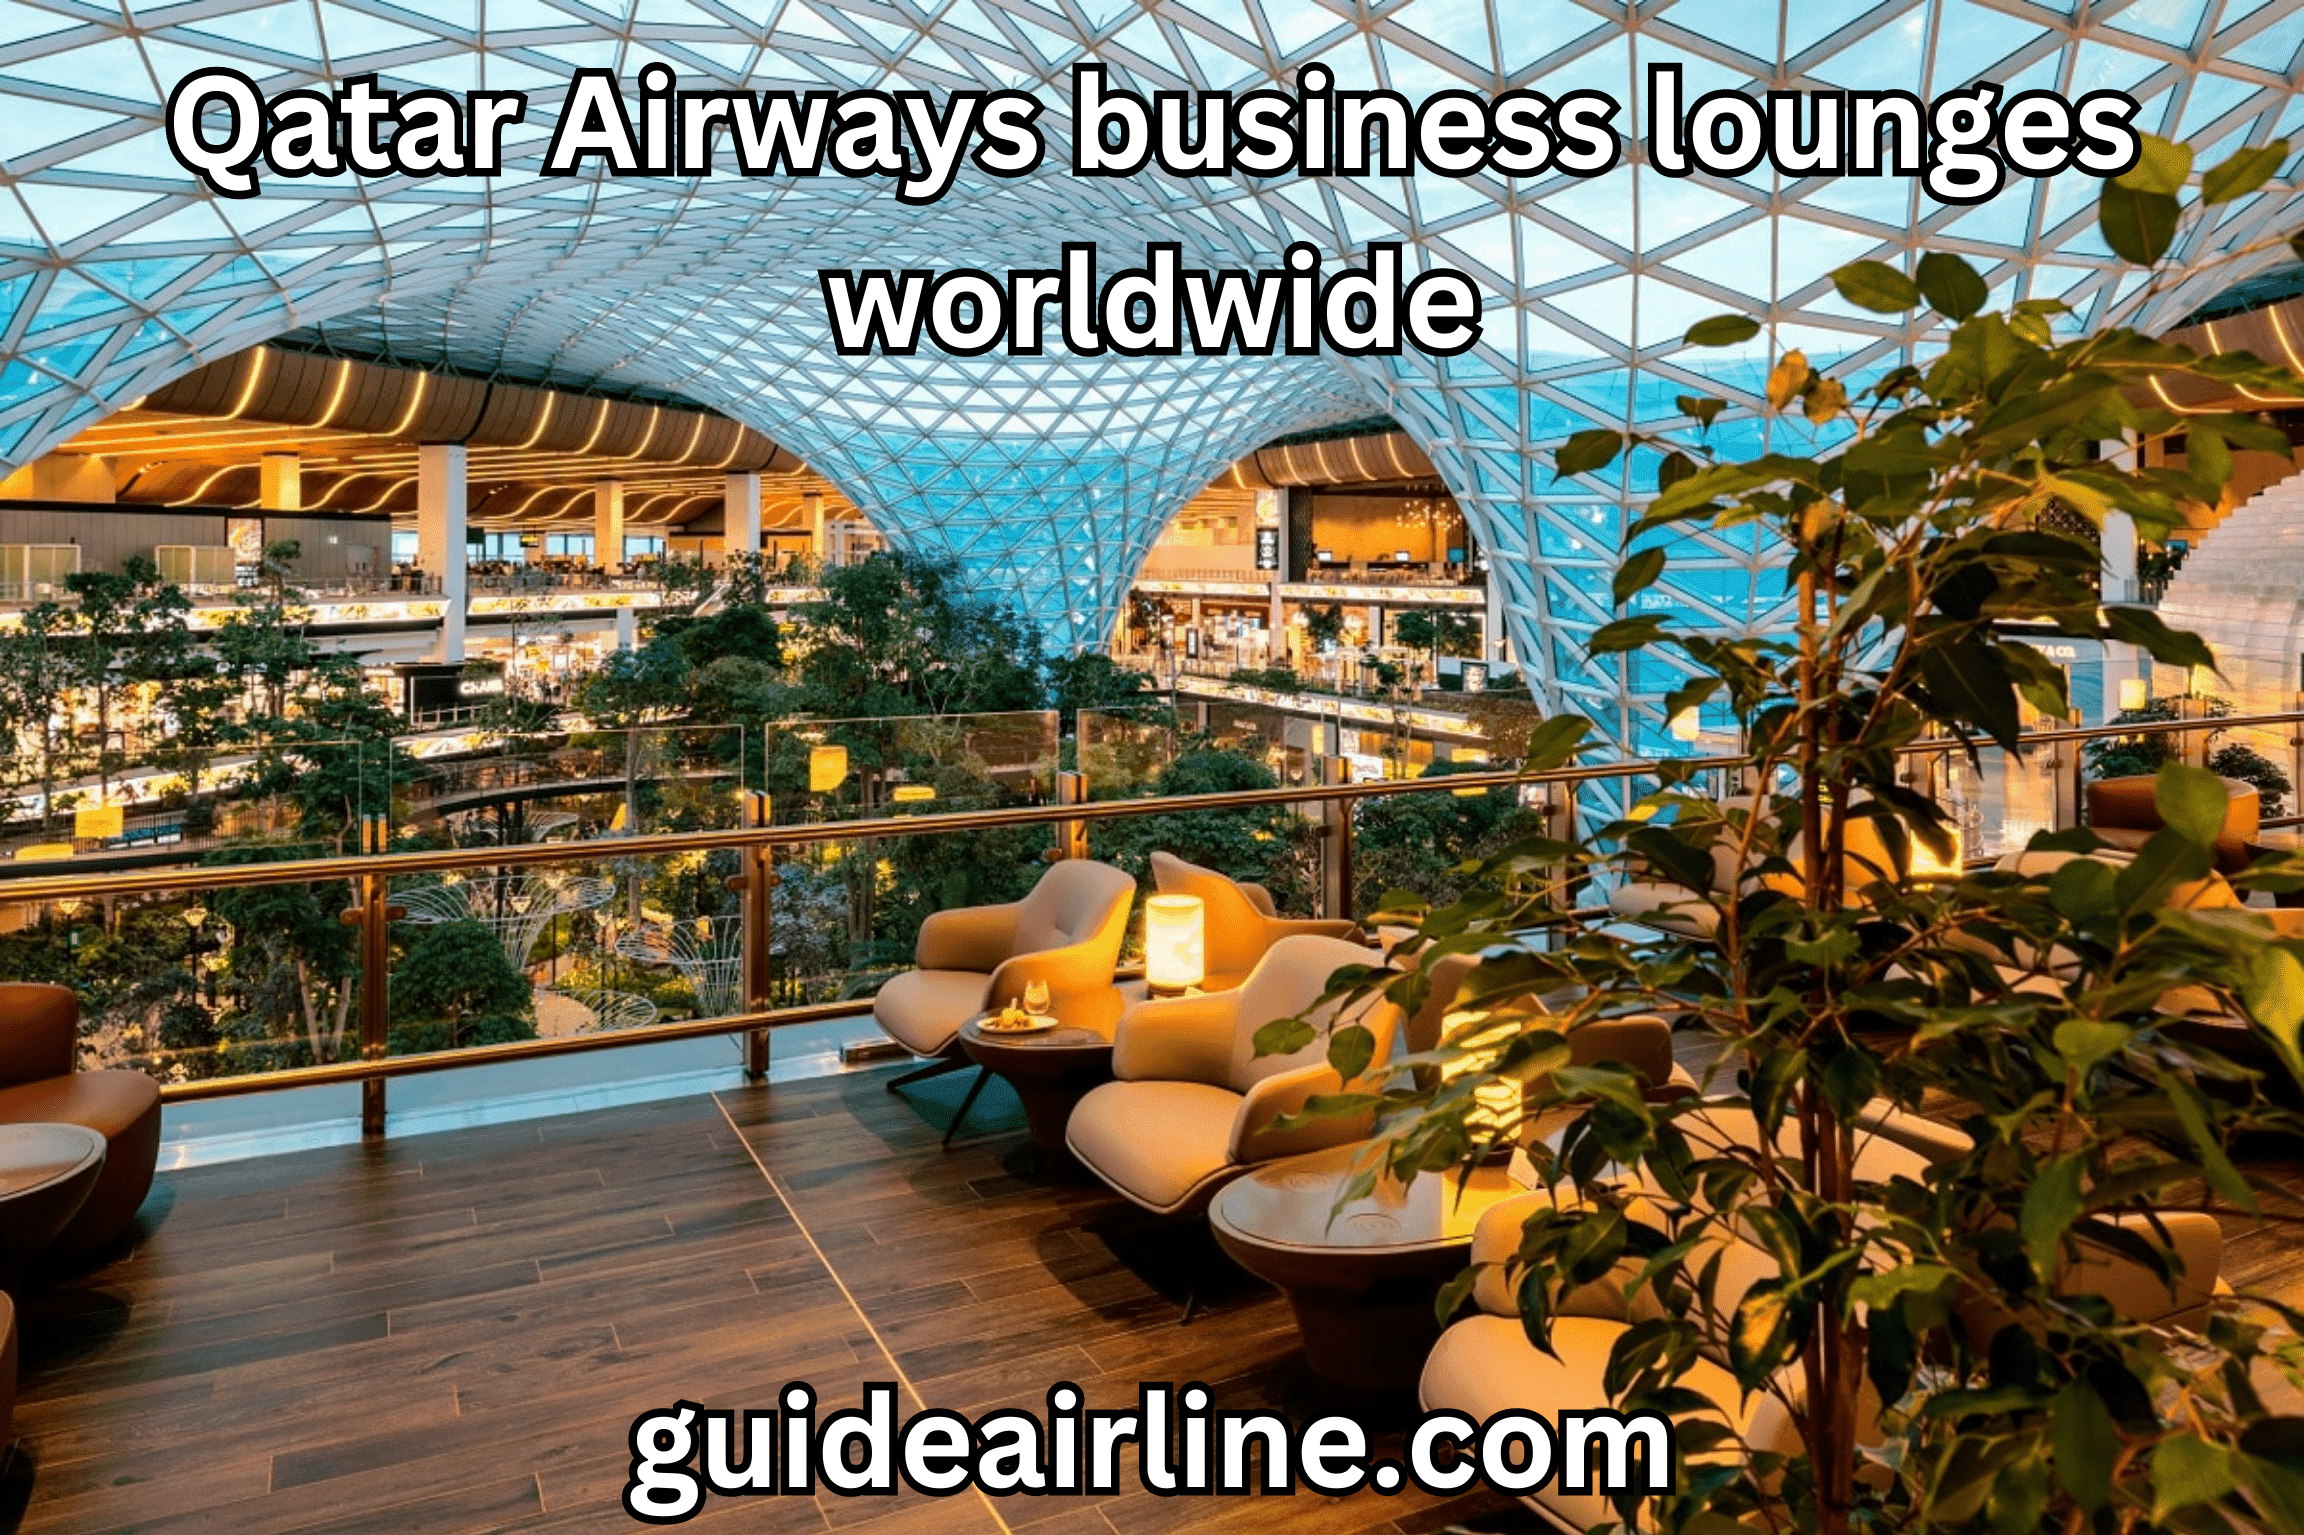 Qatar Airways business lounges worldwide